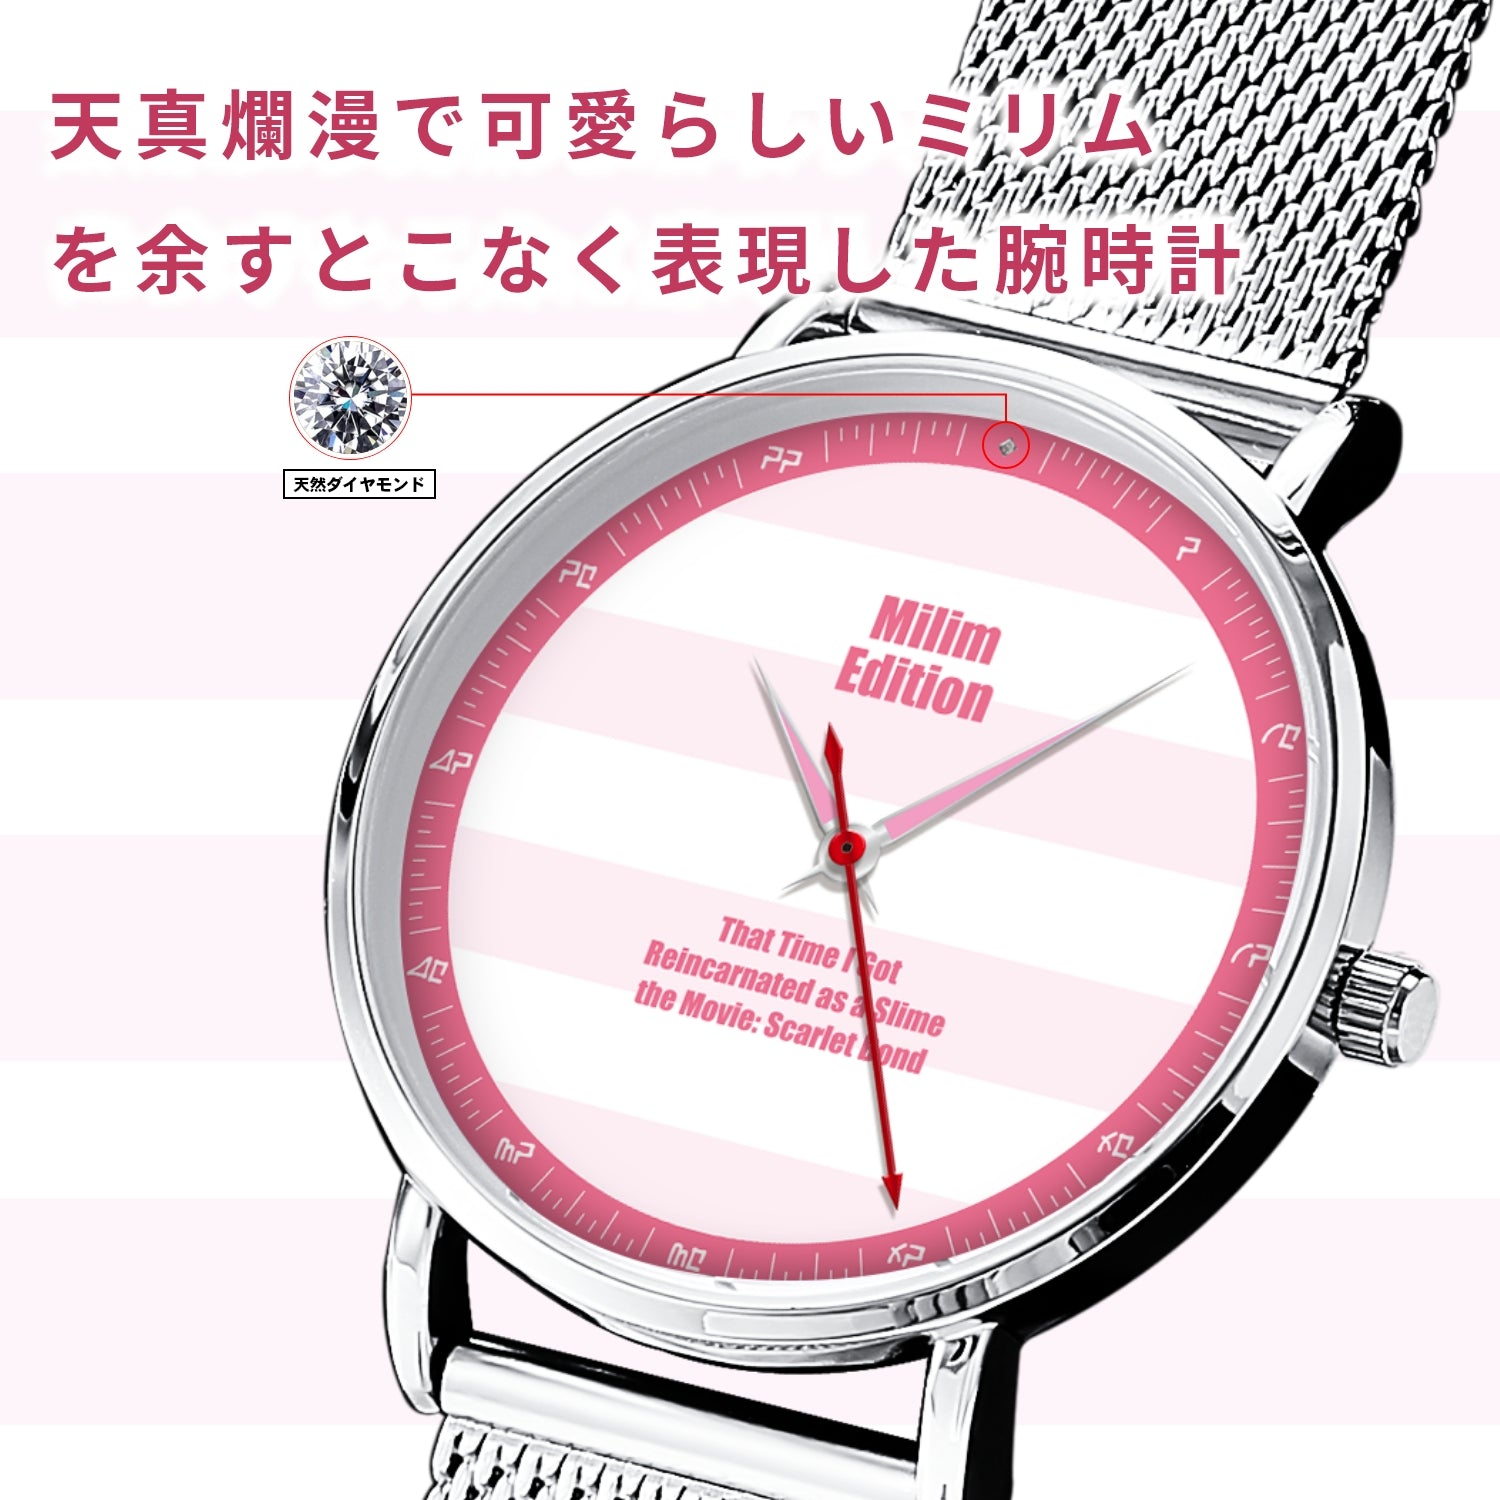 「劇場版 転生したらスライムだった件 紅蓮の絆編」オフィシャルソーラー腕時計 ミリム・エディション - 公式通販サイト「アニメコレクション/Anime Collection」